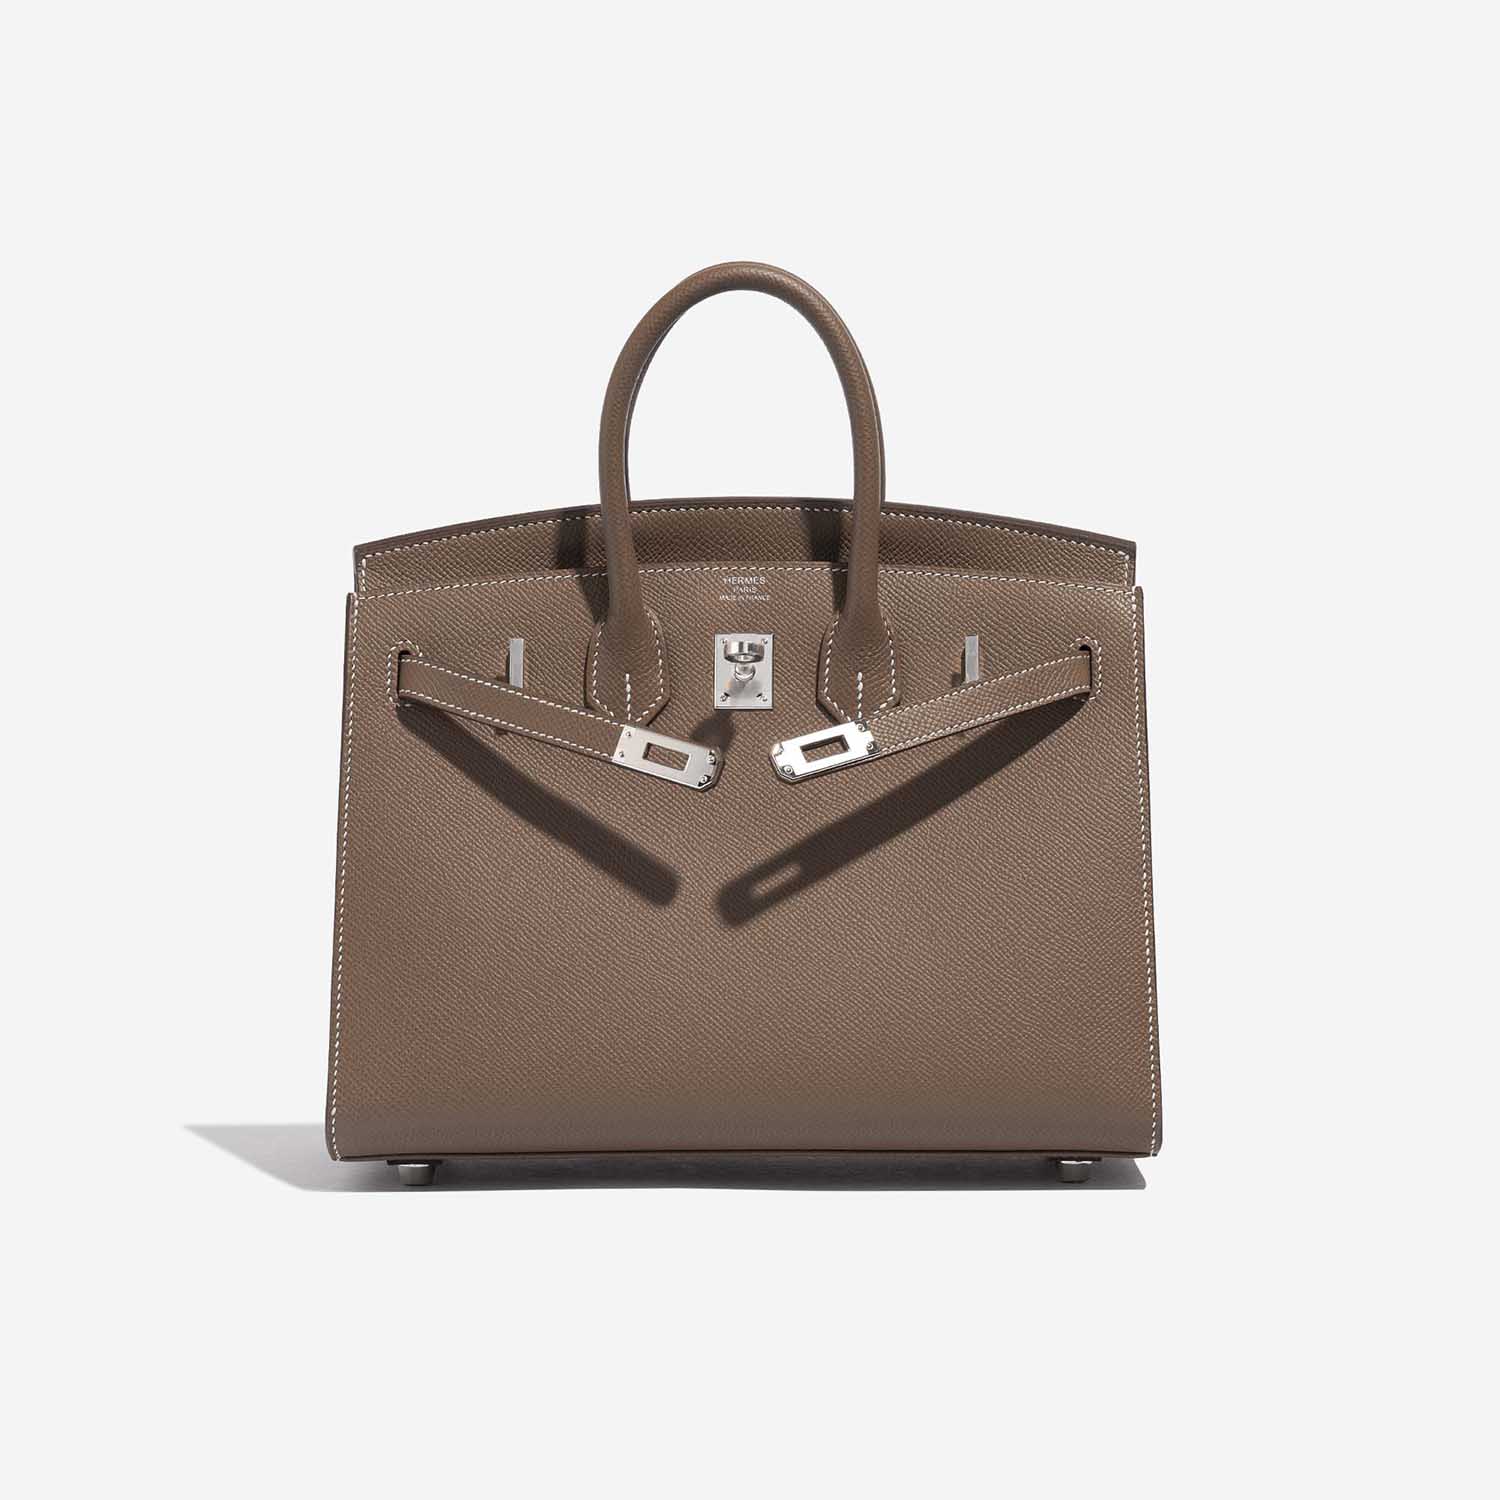 Pre-owned Hermès Tasche Birkin 25 Epsom Etoupe Brown Front Open | Verkaufen Sie Ihre Designer-Tasche auf Saclab.com